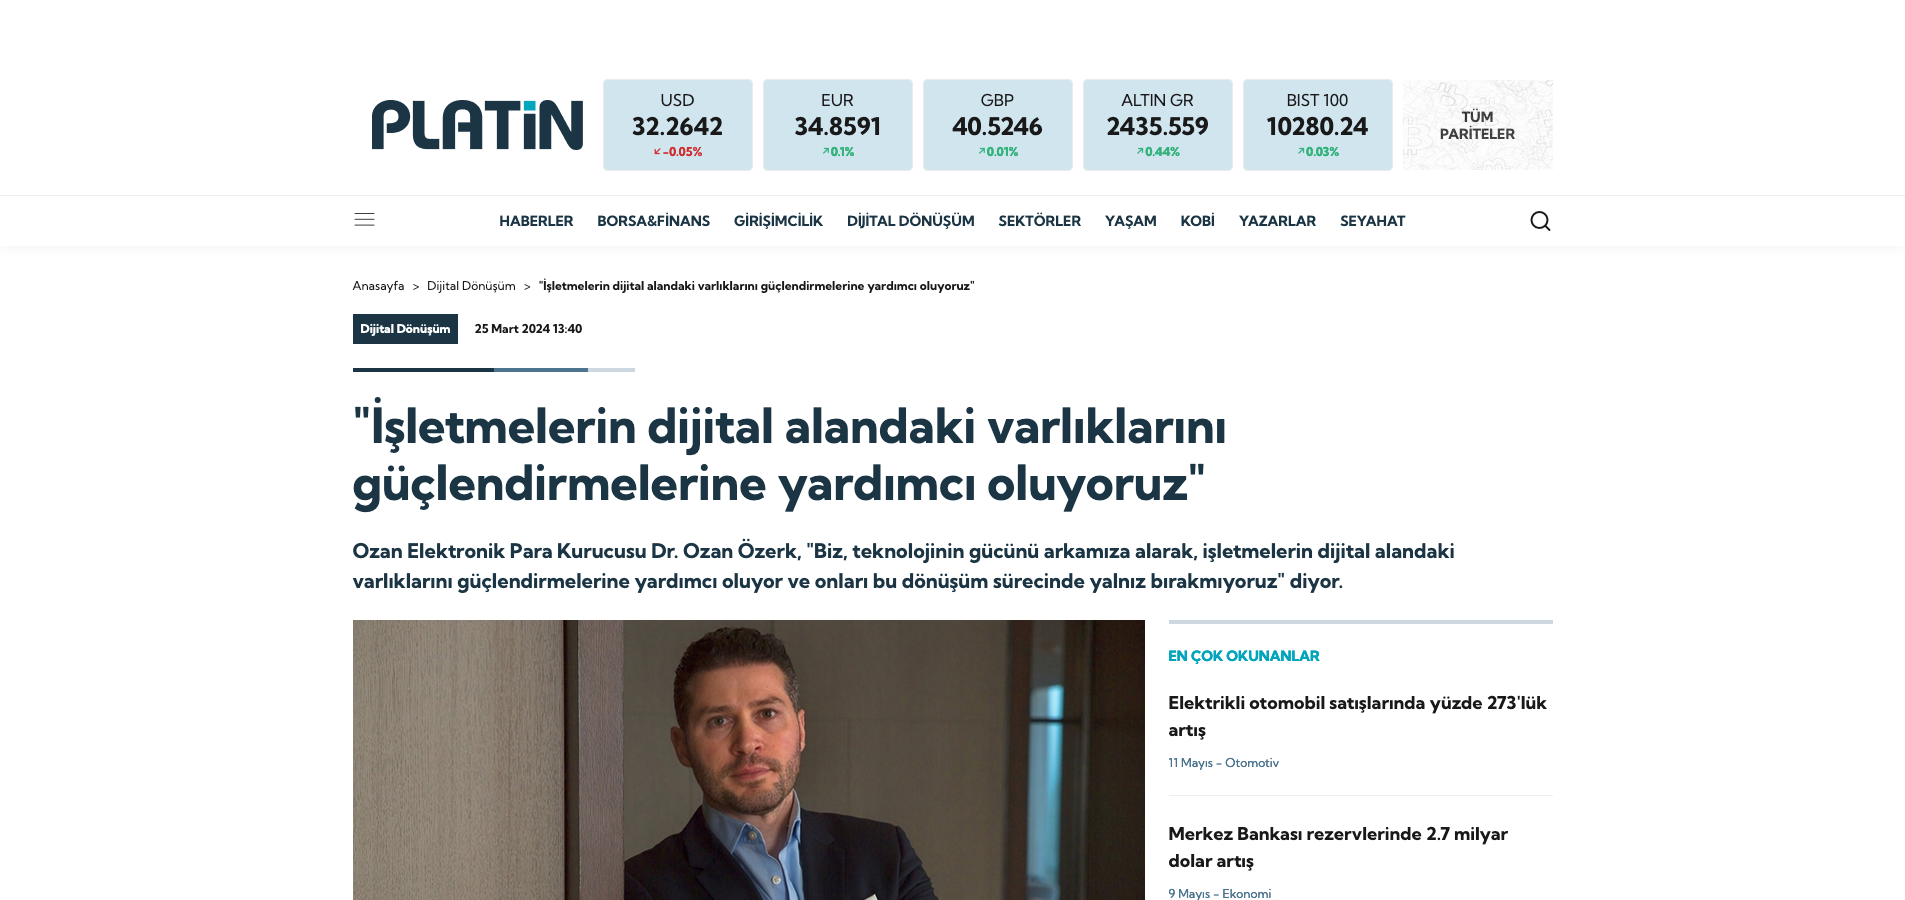 Platin Online - Ozan Özerk, Ömer Suner, Ozan Elektronik Para